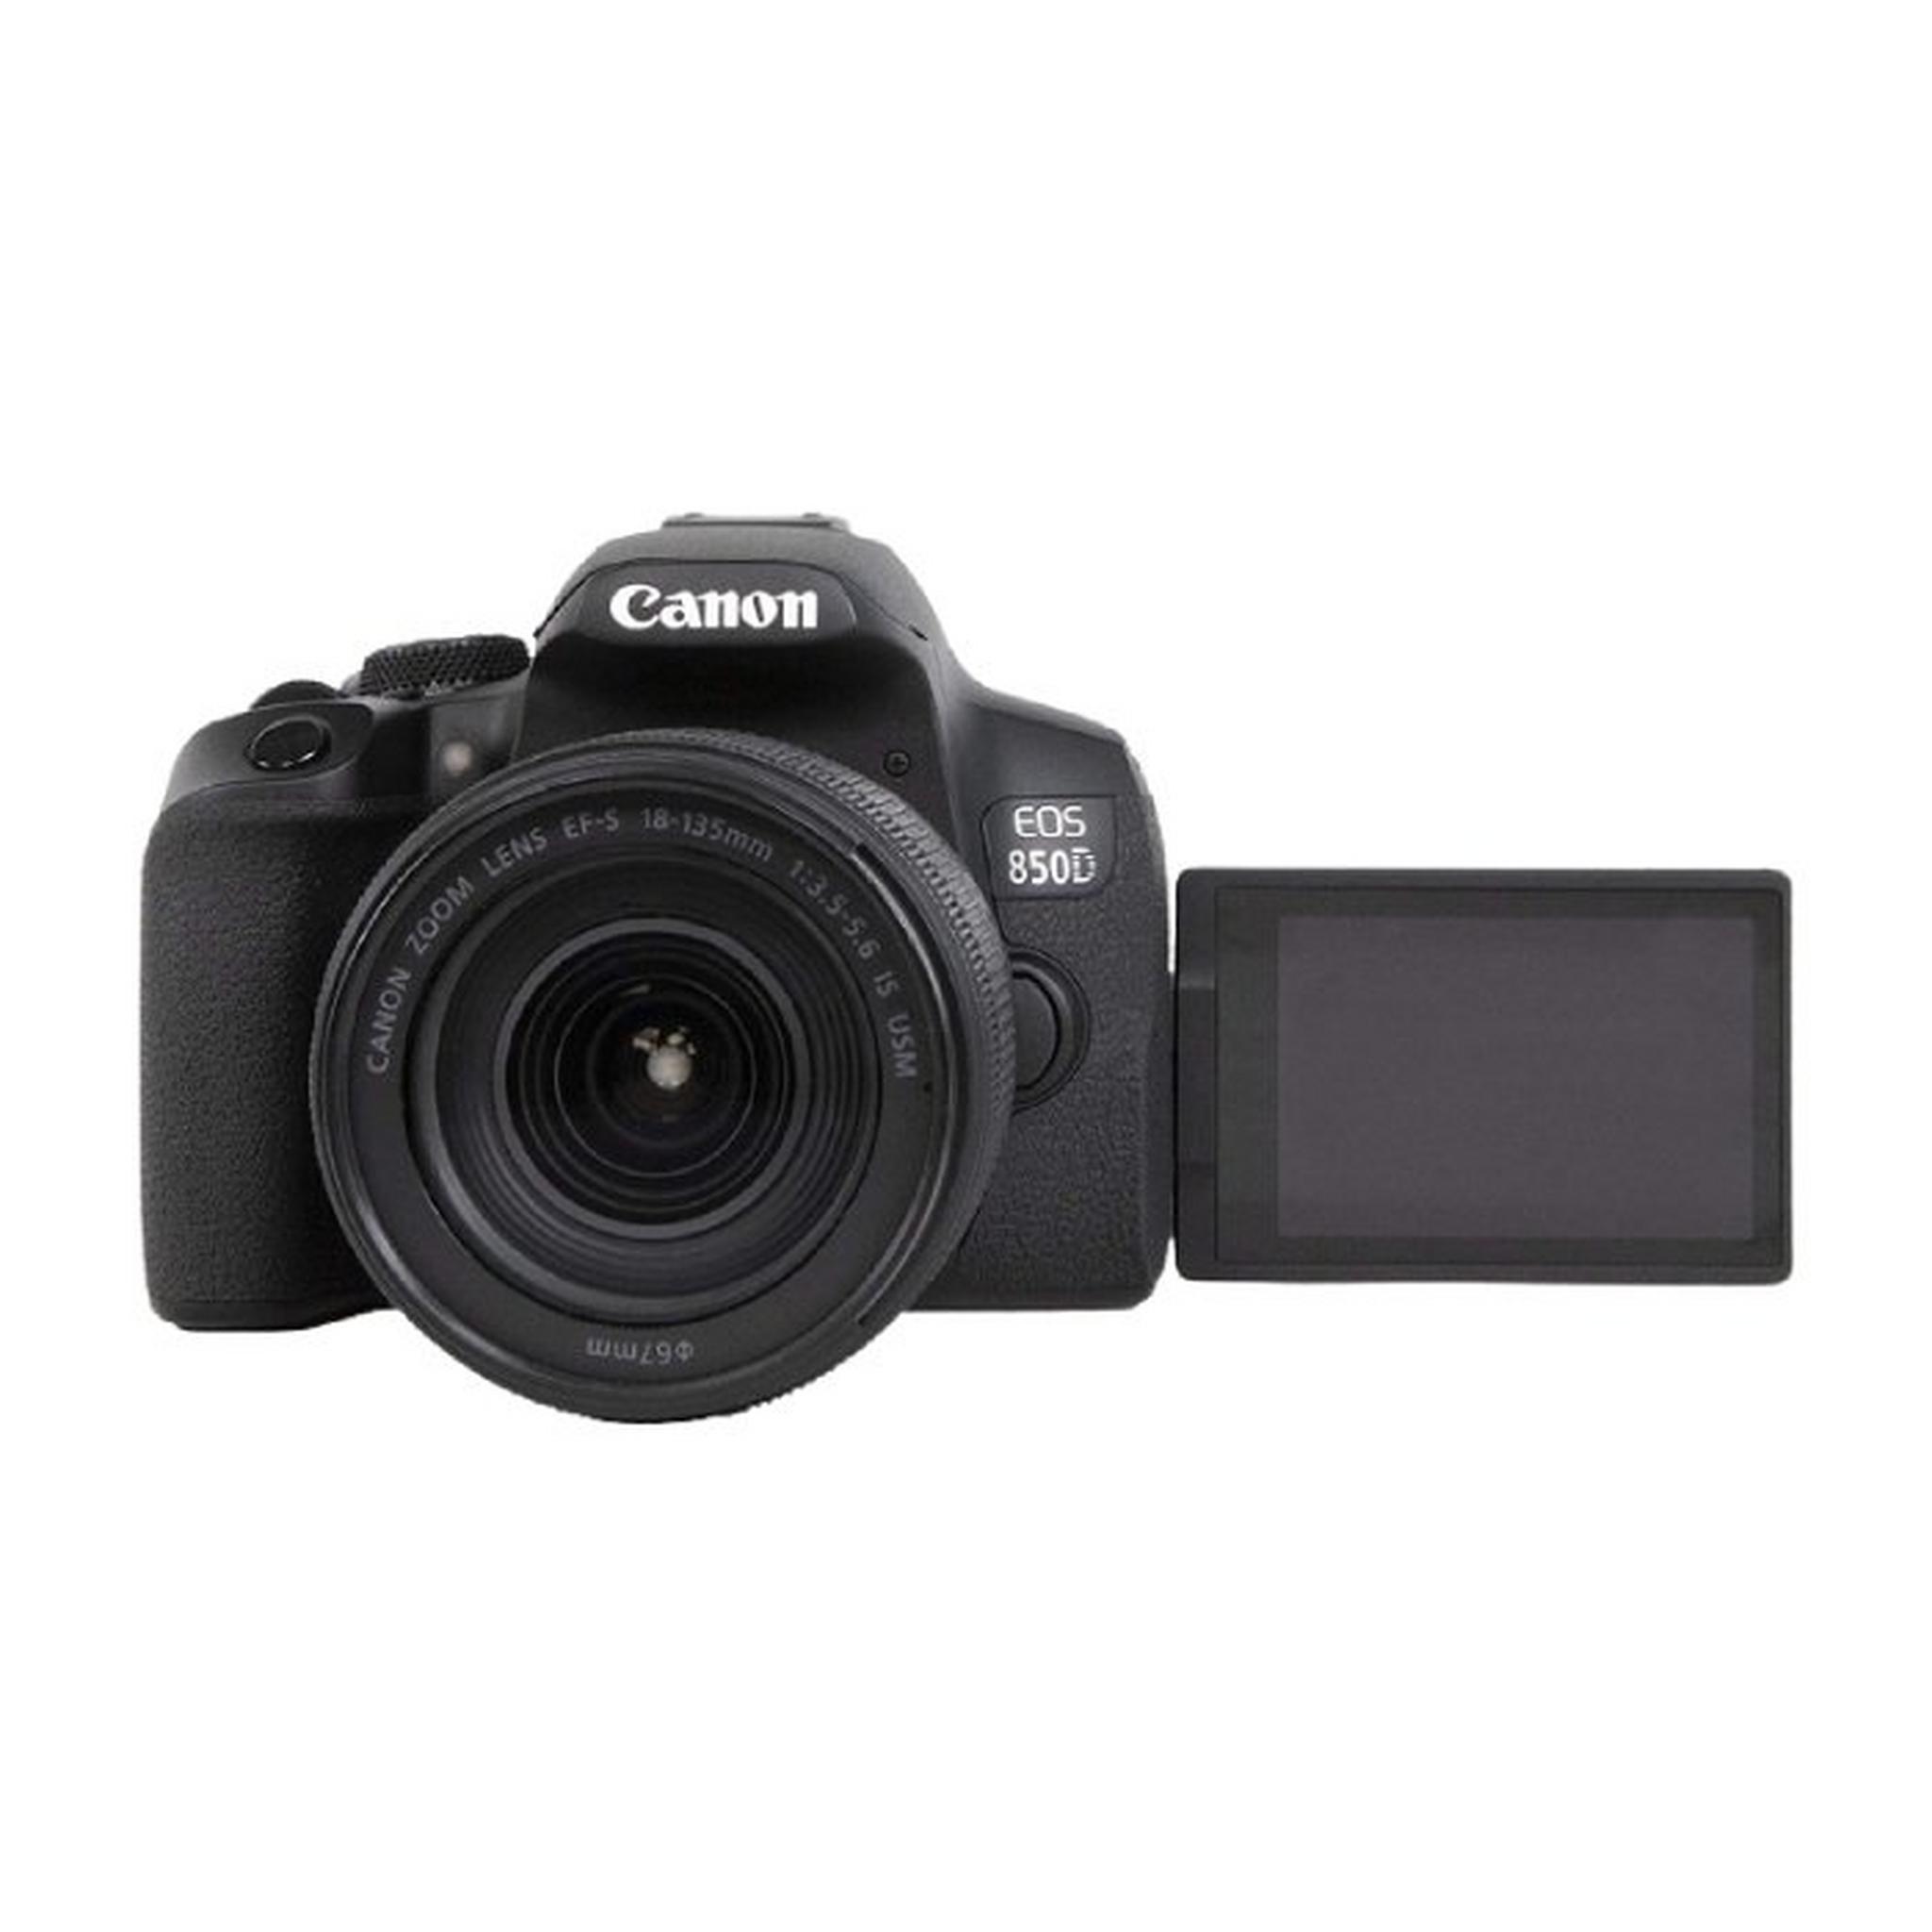 Canon EOS 850D DSLR Camera + EF-S 18-135mm f/3.5-5.6 IS USM Lens